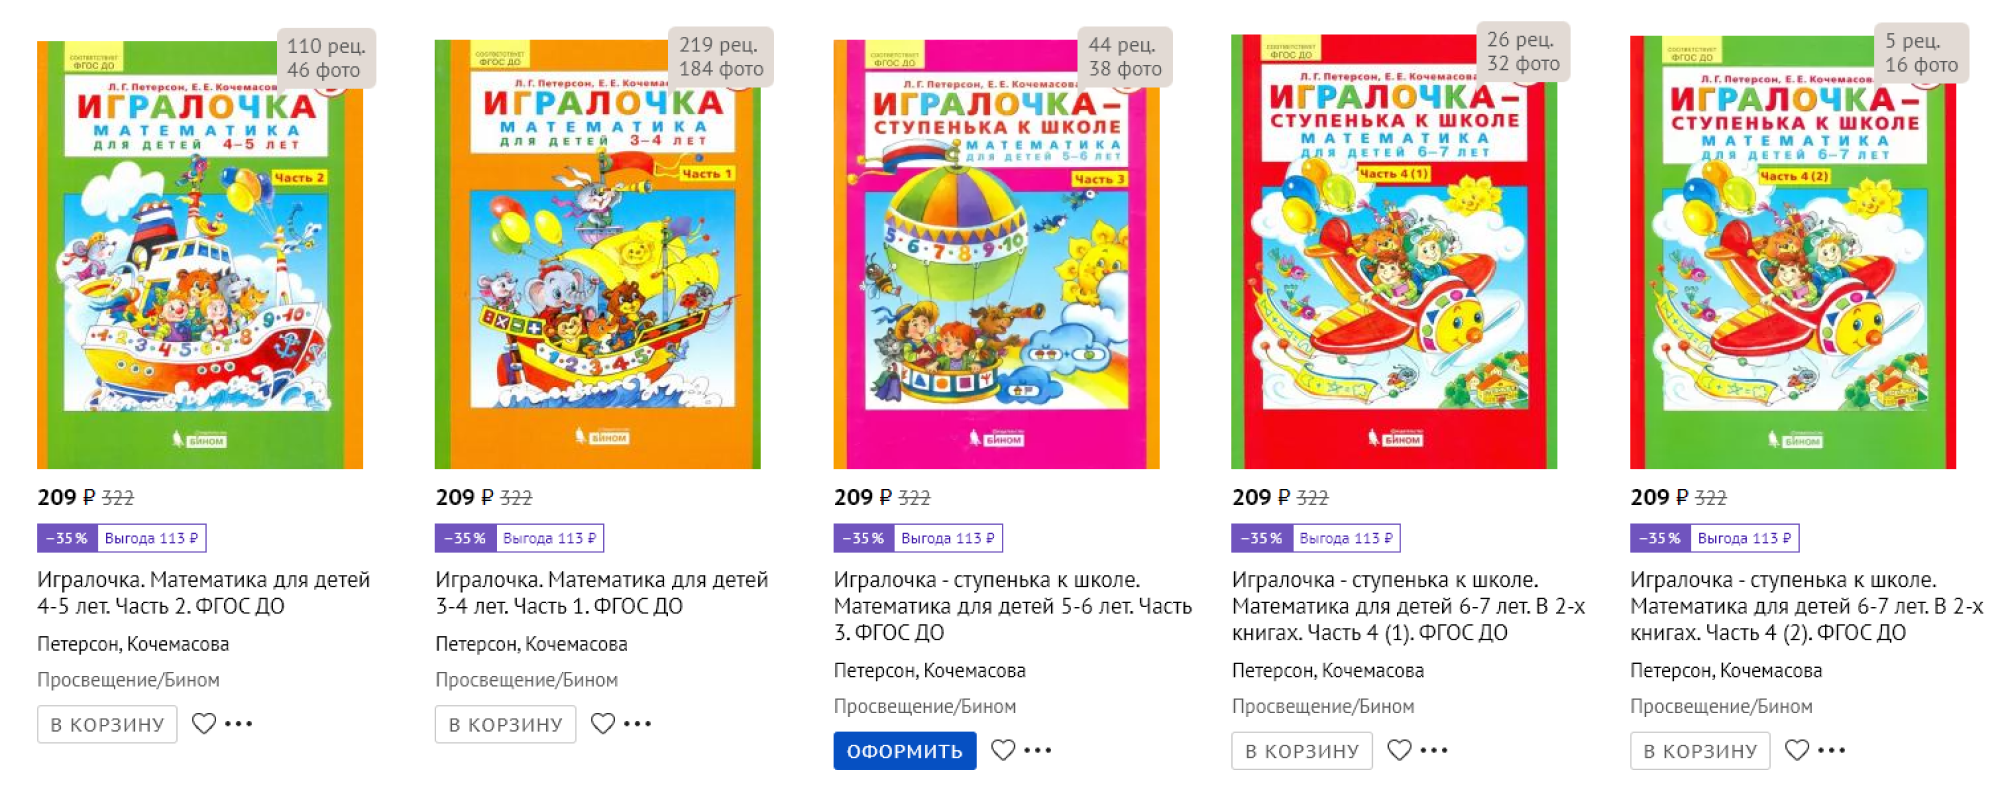 На обложках «Игралочек» герои сказок, знакомые именно российскому ребенку. Источник: labirint.ru